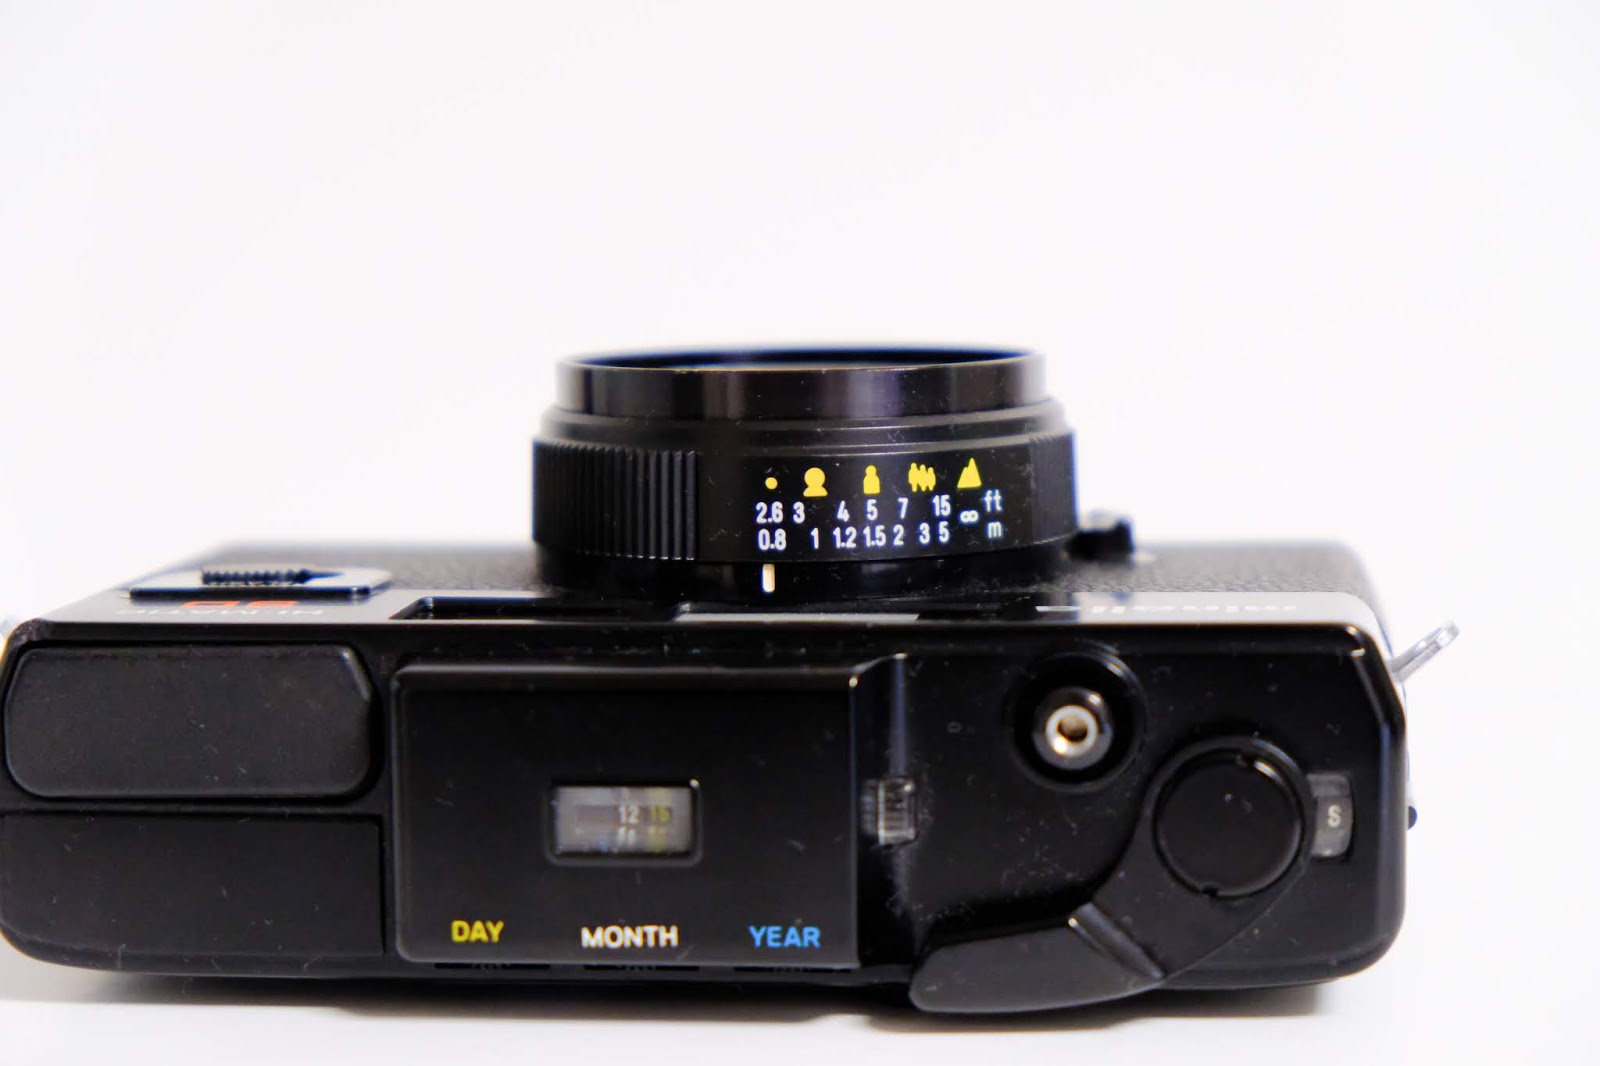 MINOLTA HI-MATIC SDと過ごす、はじめてのフィルムカメラ生活。＃カメクラの沼カレ2019 | Peach Breeze